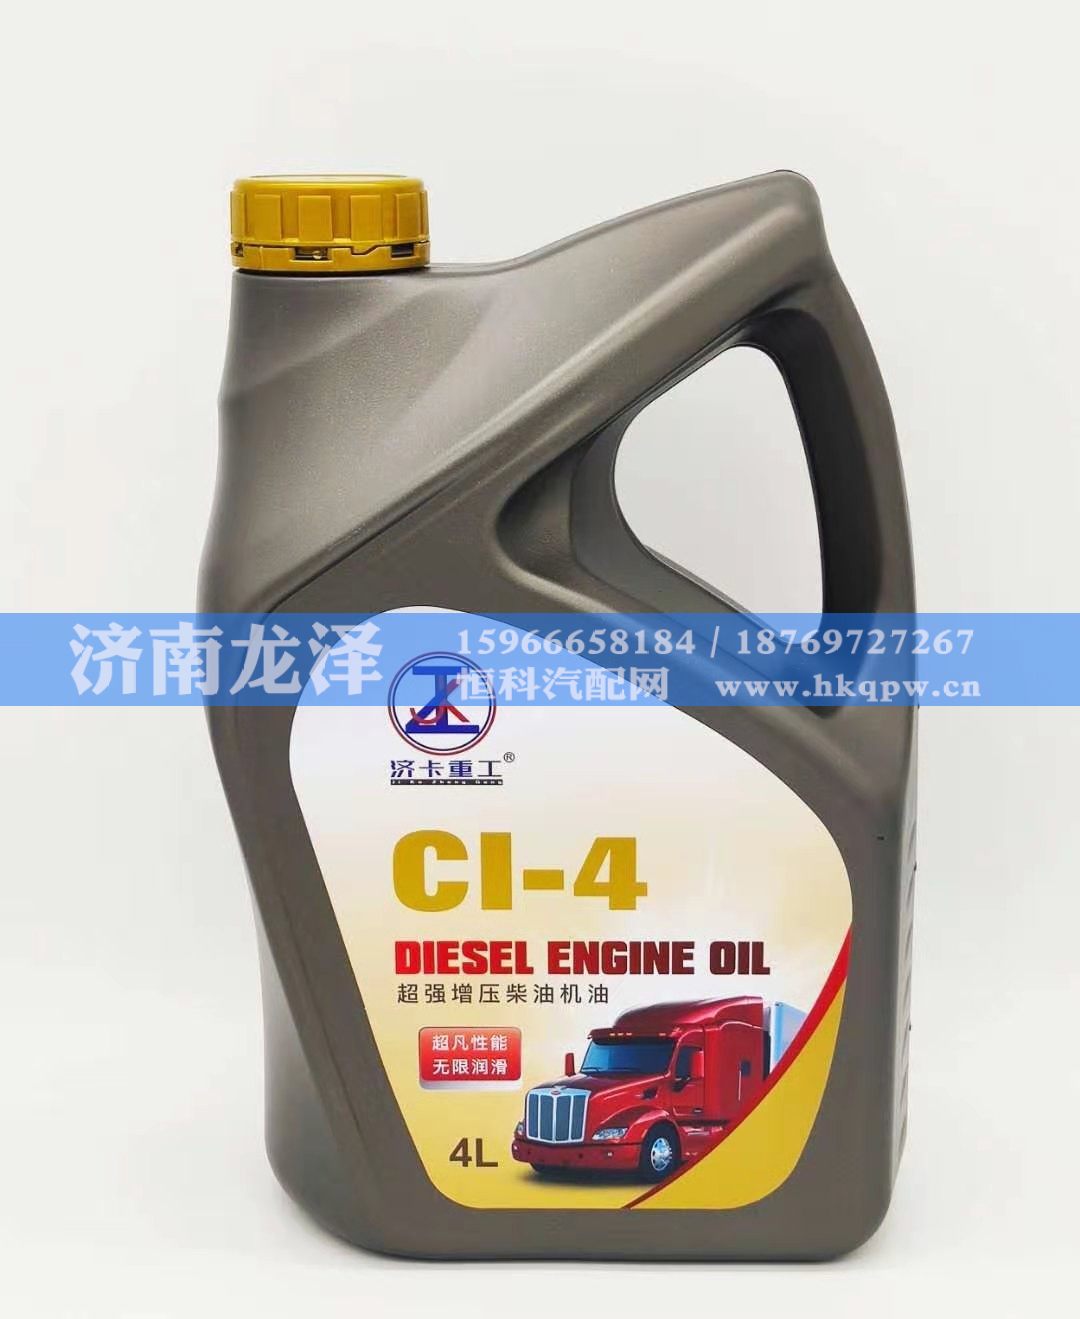 CI-4超强增压柴油机油/CI-4